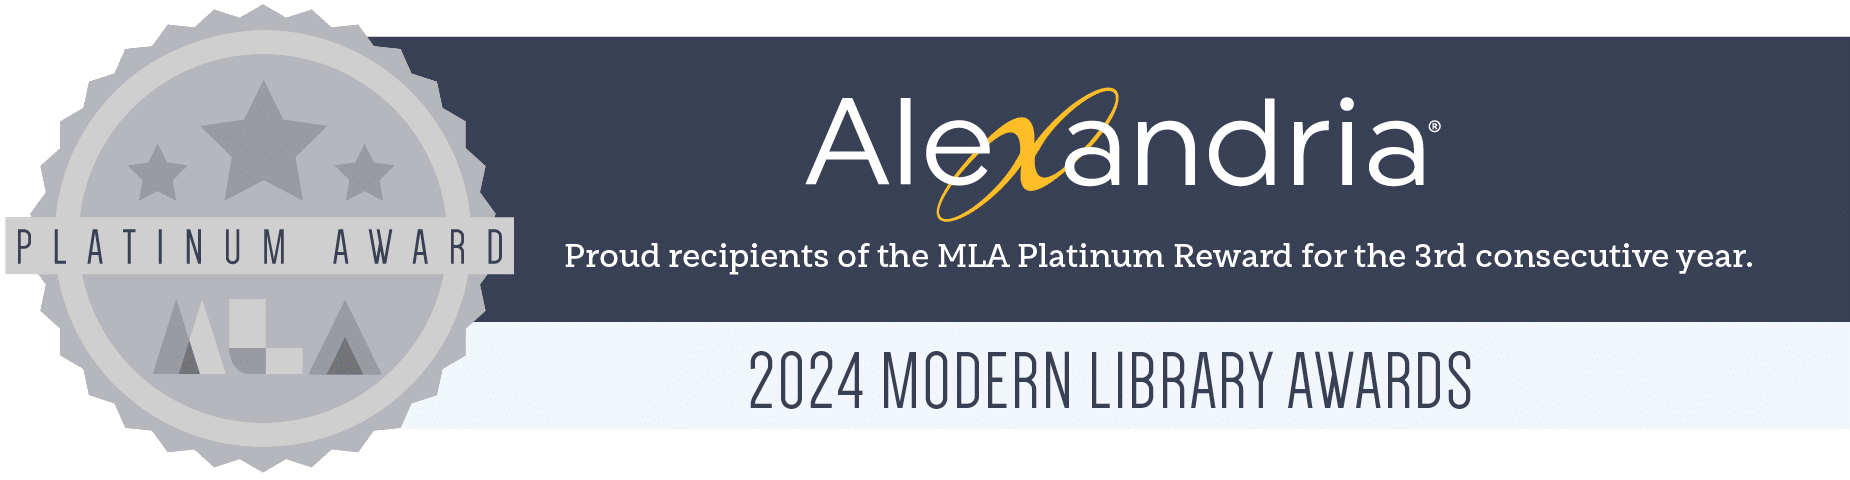 2024-MLA-Awards-Banner-emails